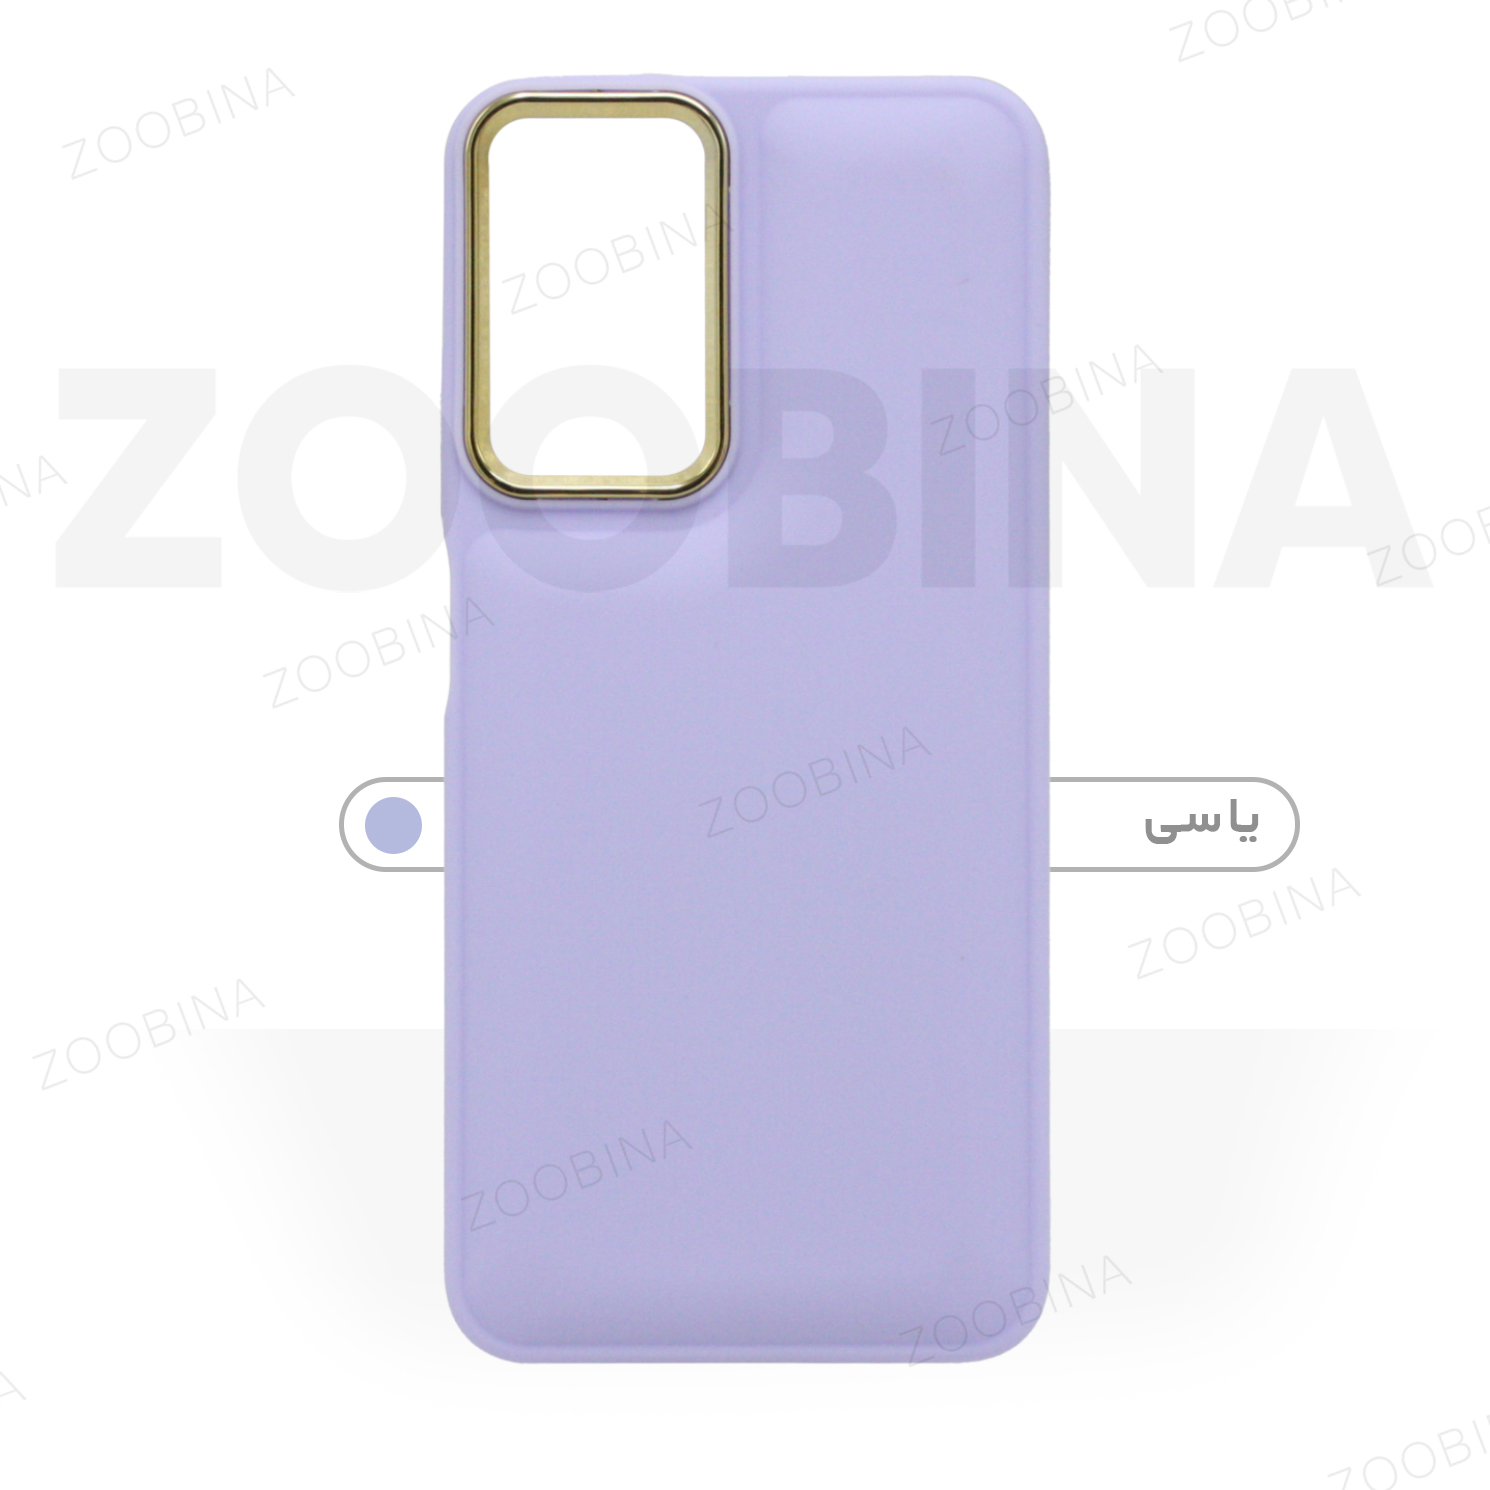  کاور زوبینا مدل Rova مناسب برای گوشی موبایل شیائومی Redmi Note 8